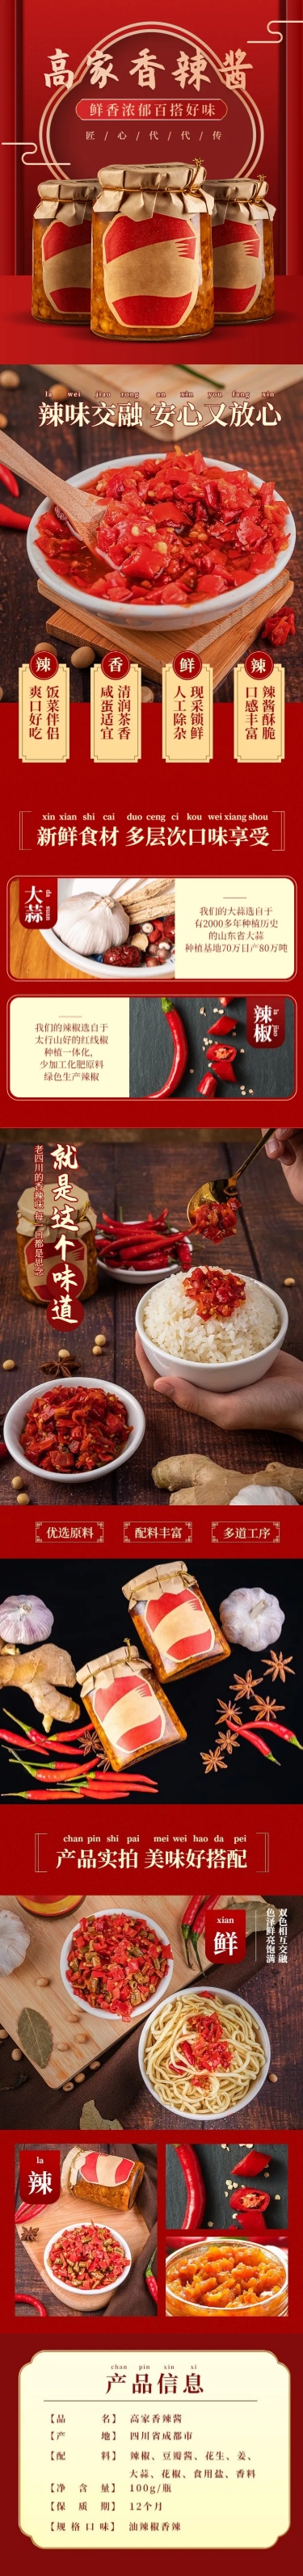 中国风食品调料辣椒酱详情页